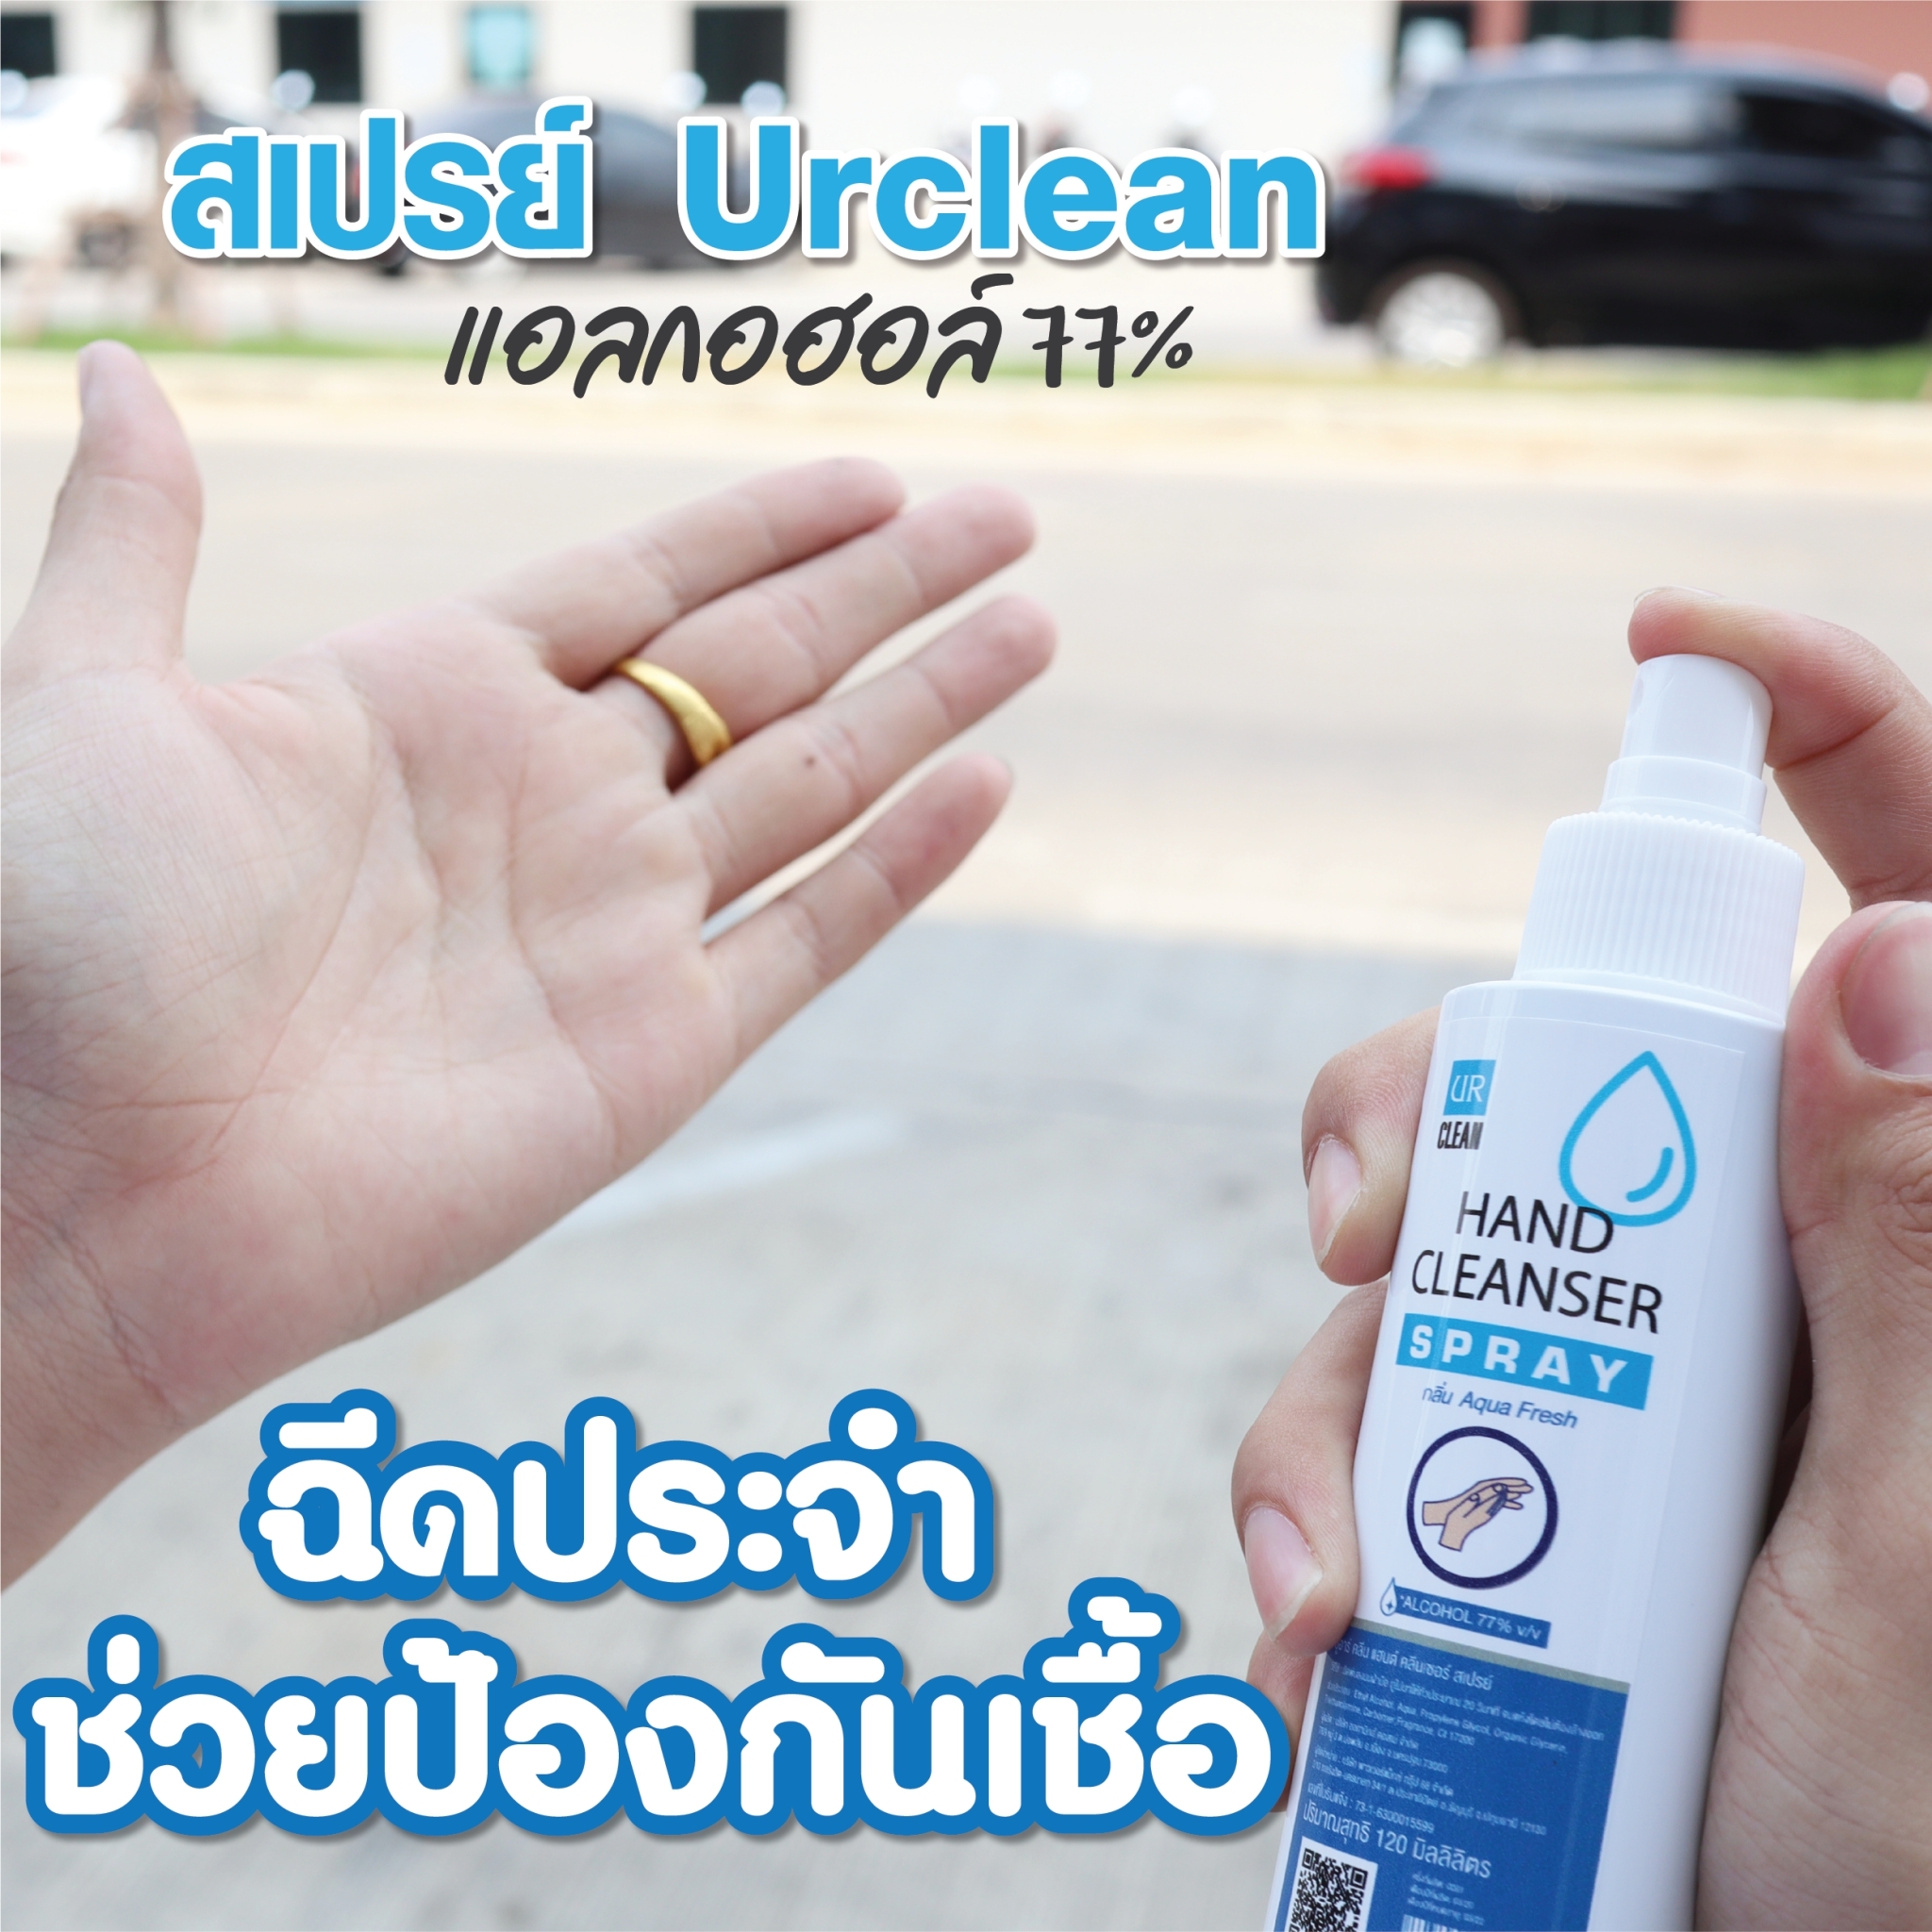 UR CLEAN SPRAY HAND CLEANSER สเปรย์ทำความสะอาดแบบไม่ต้องล้างน้ำออก ที่ความเข้มข้นของแอลกอฮอล์ถึง 77 % ลดการสะสมของแบคทีเรียได้ถึง 99.99% ปริมาณ 120 มล